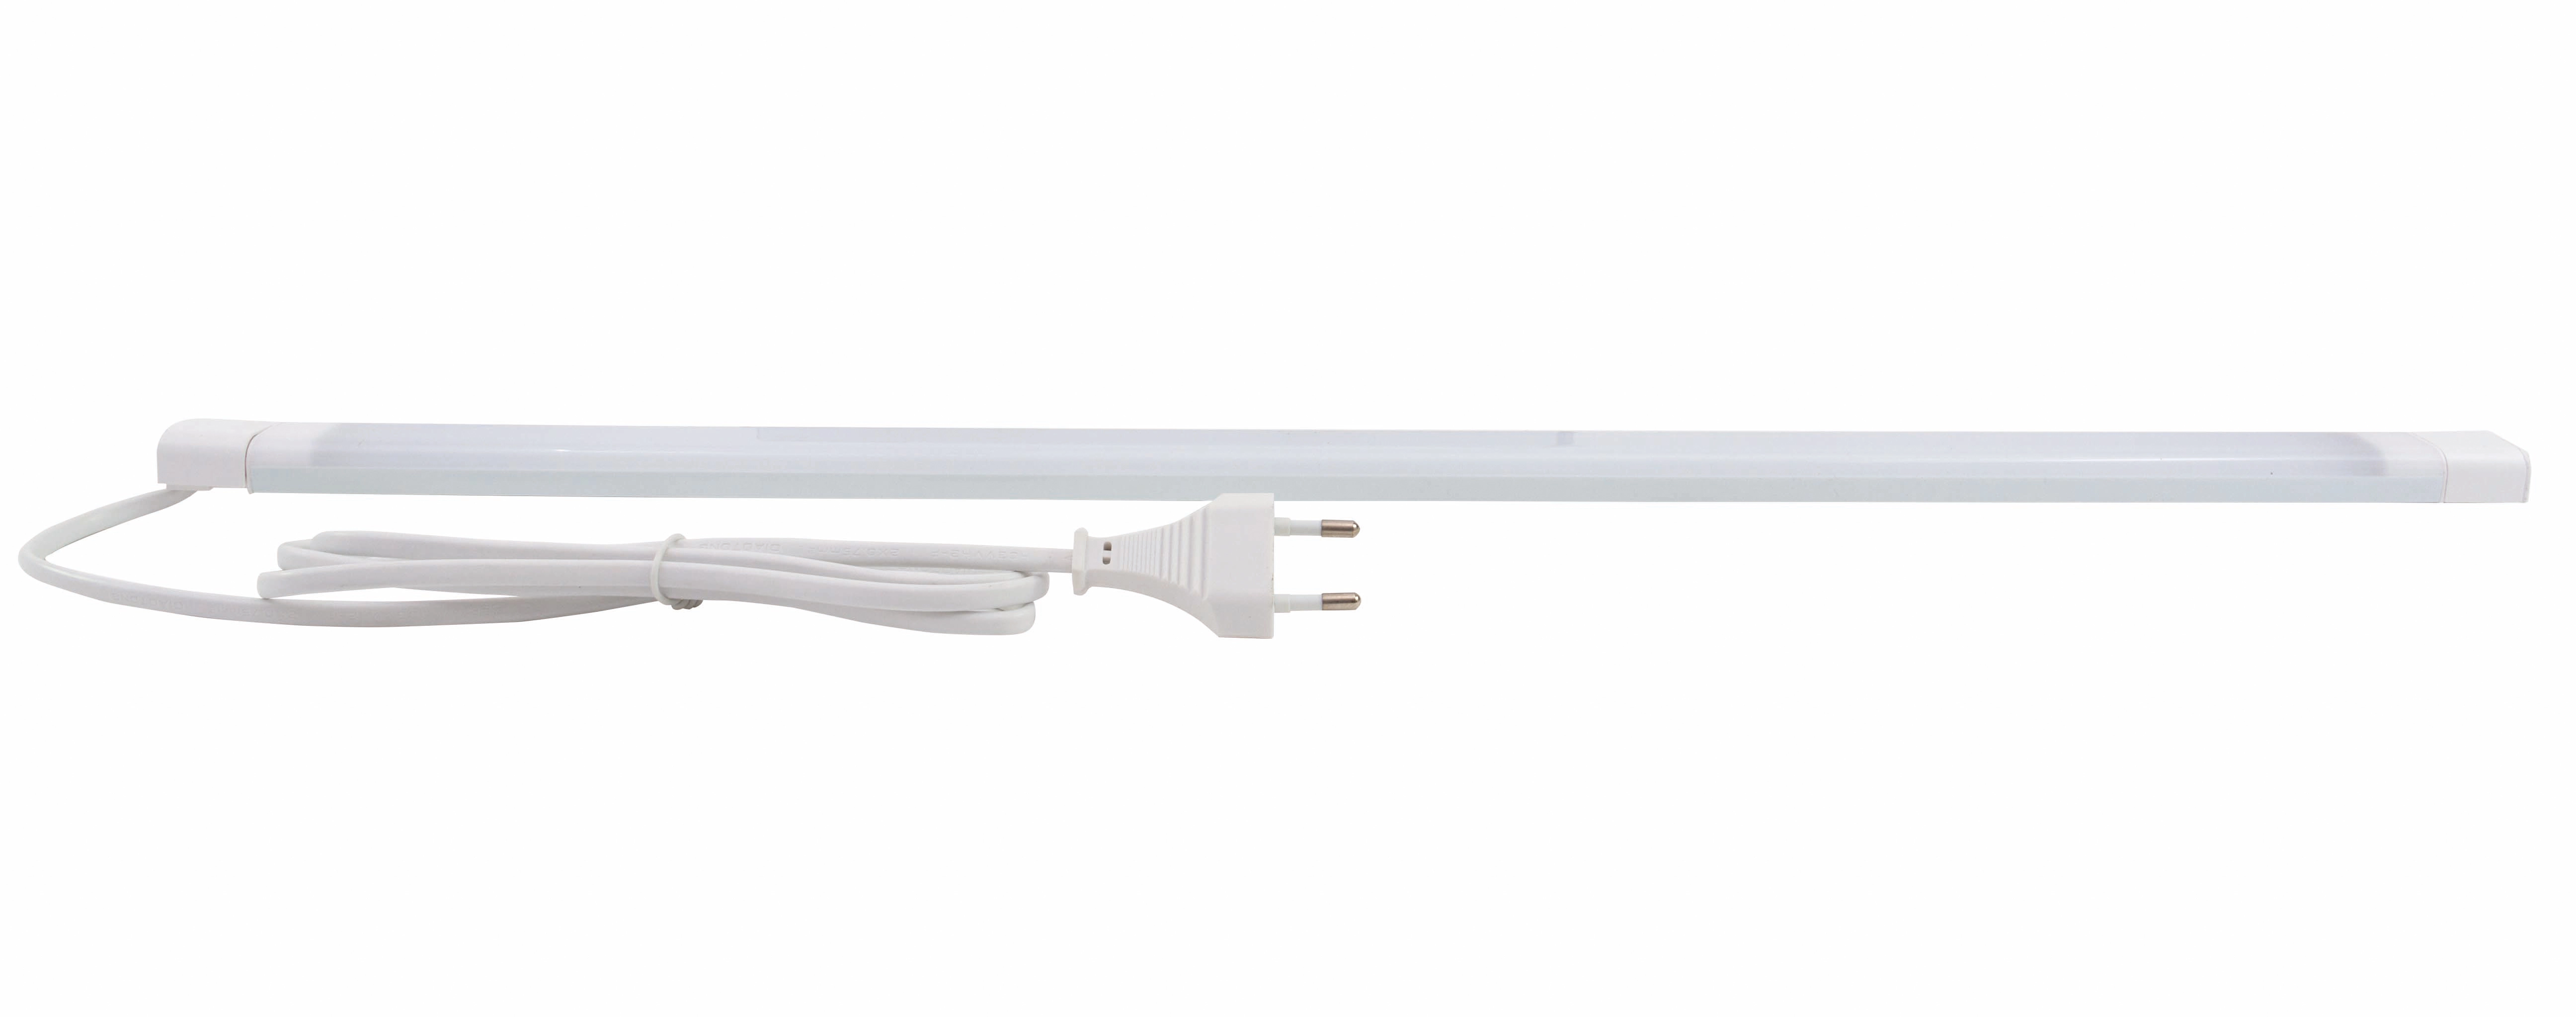 REV Ritter LED-Unterbauleuchte V600 60 cm OBI Schalter Weiß kaufen bei 560 lm 3000 K